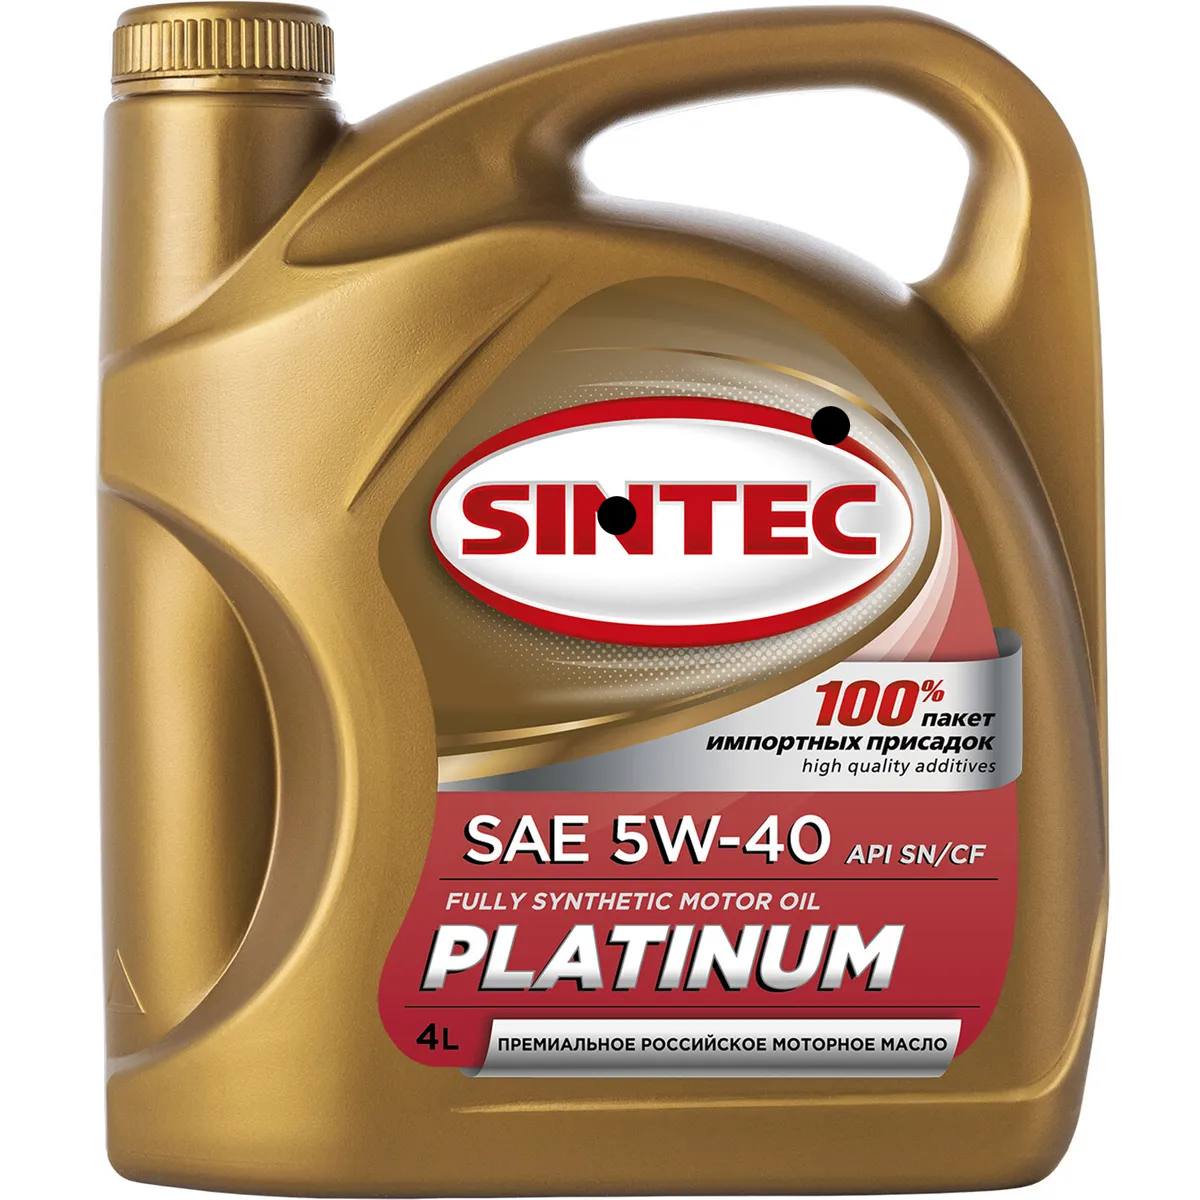 Масло моторное синтетическое Sintec Platinum SN/CF 5W-40, 4л акция 1л